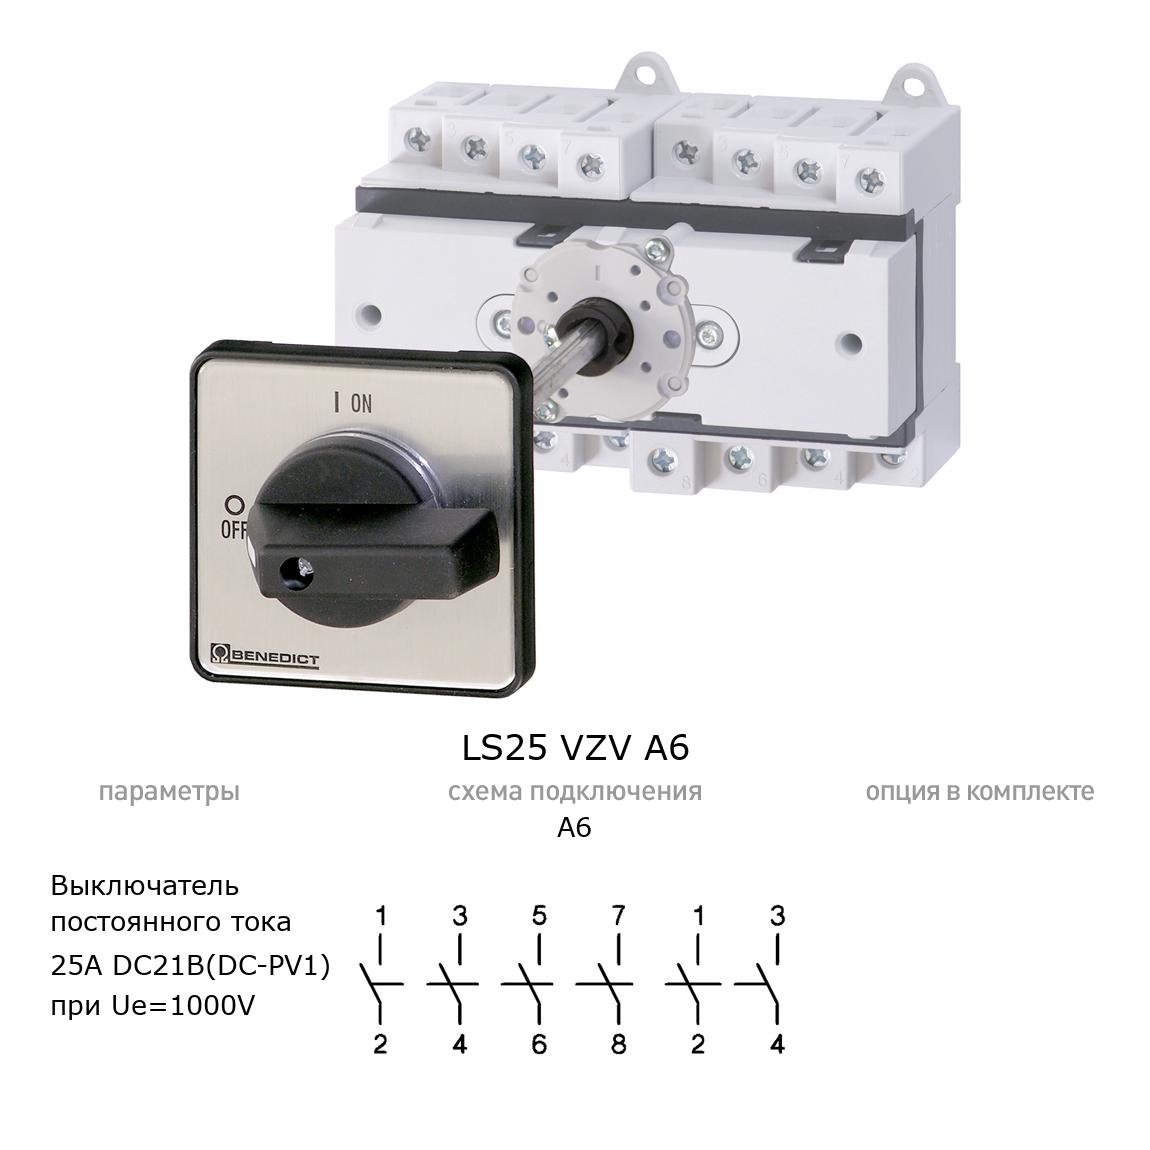 Кулачковый переключатель для постоянного тока (DC) LS25 VZV A6 BENEDICT